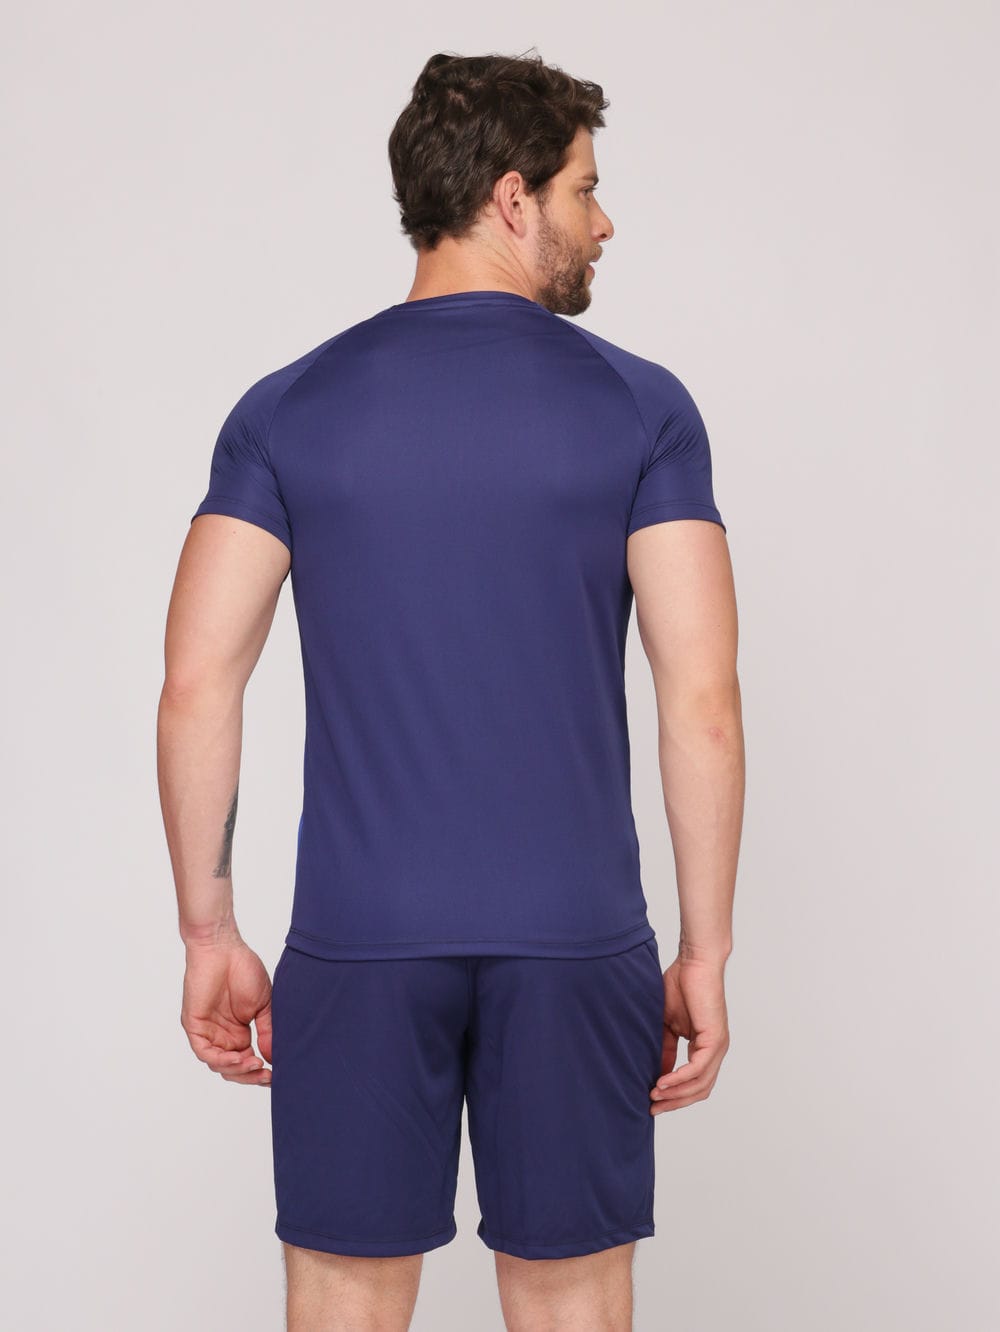 Camiseta Masculina com Recorte DryFit: Absorve 70% do Suor e Não Esquenta  - Azul